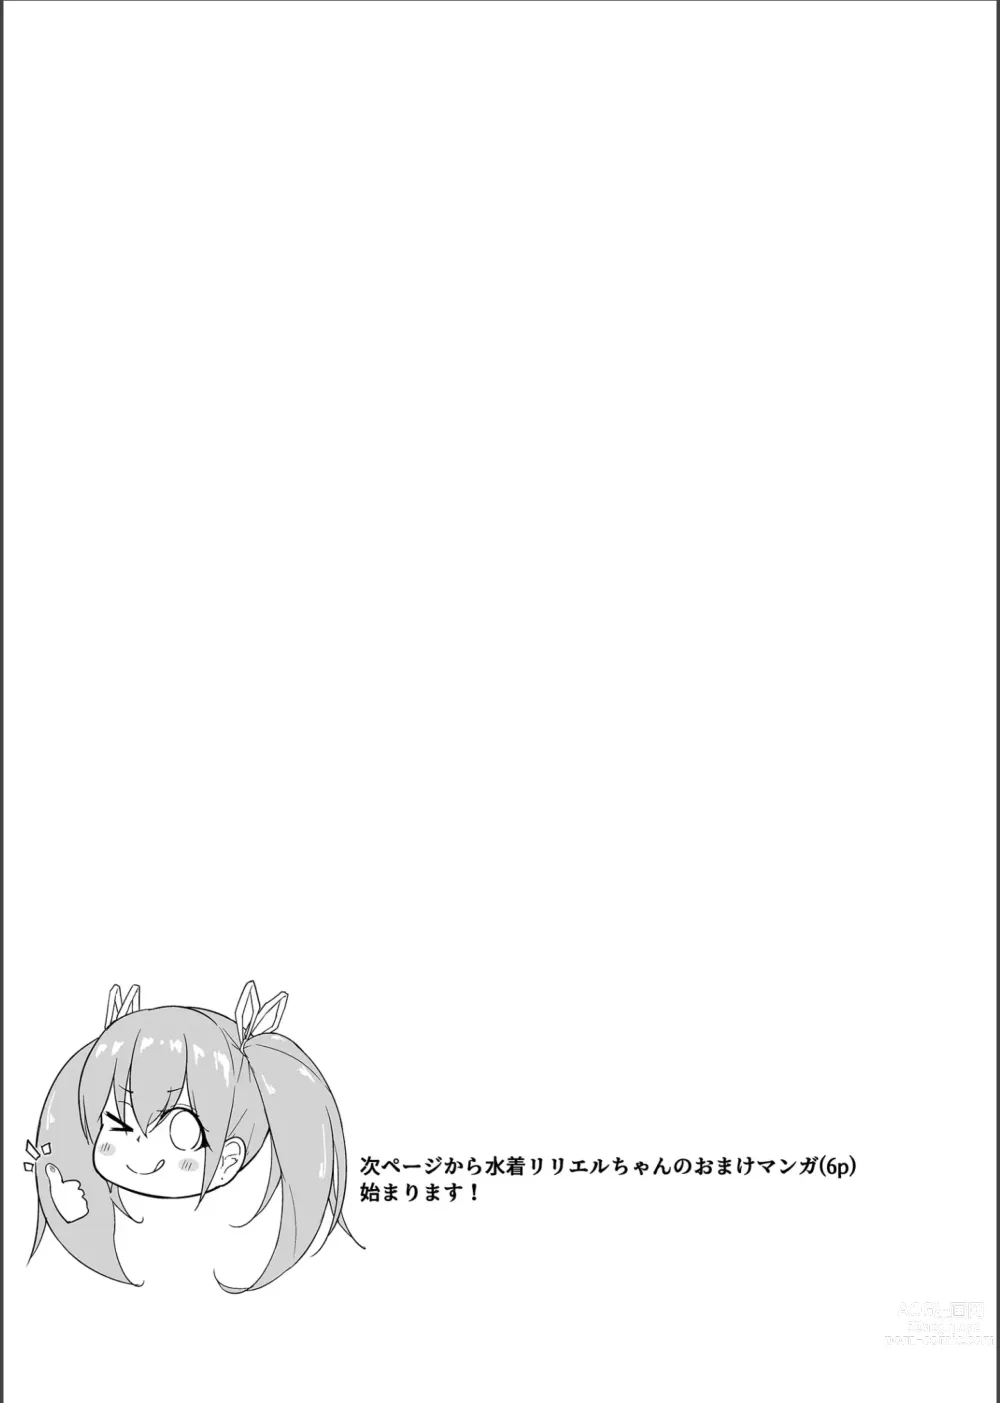 Page 40 of doujinshi Tenshi Ririeru-chan ga Shokushu Monster ni Tsukamatte Shokushu Akume de Kairakuni Otosareru Made